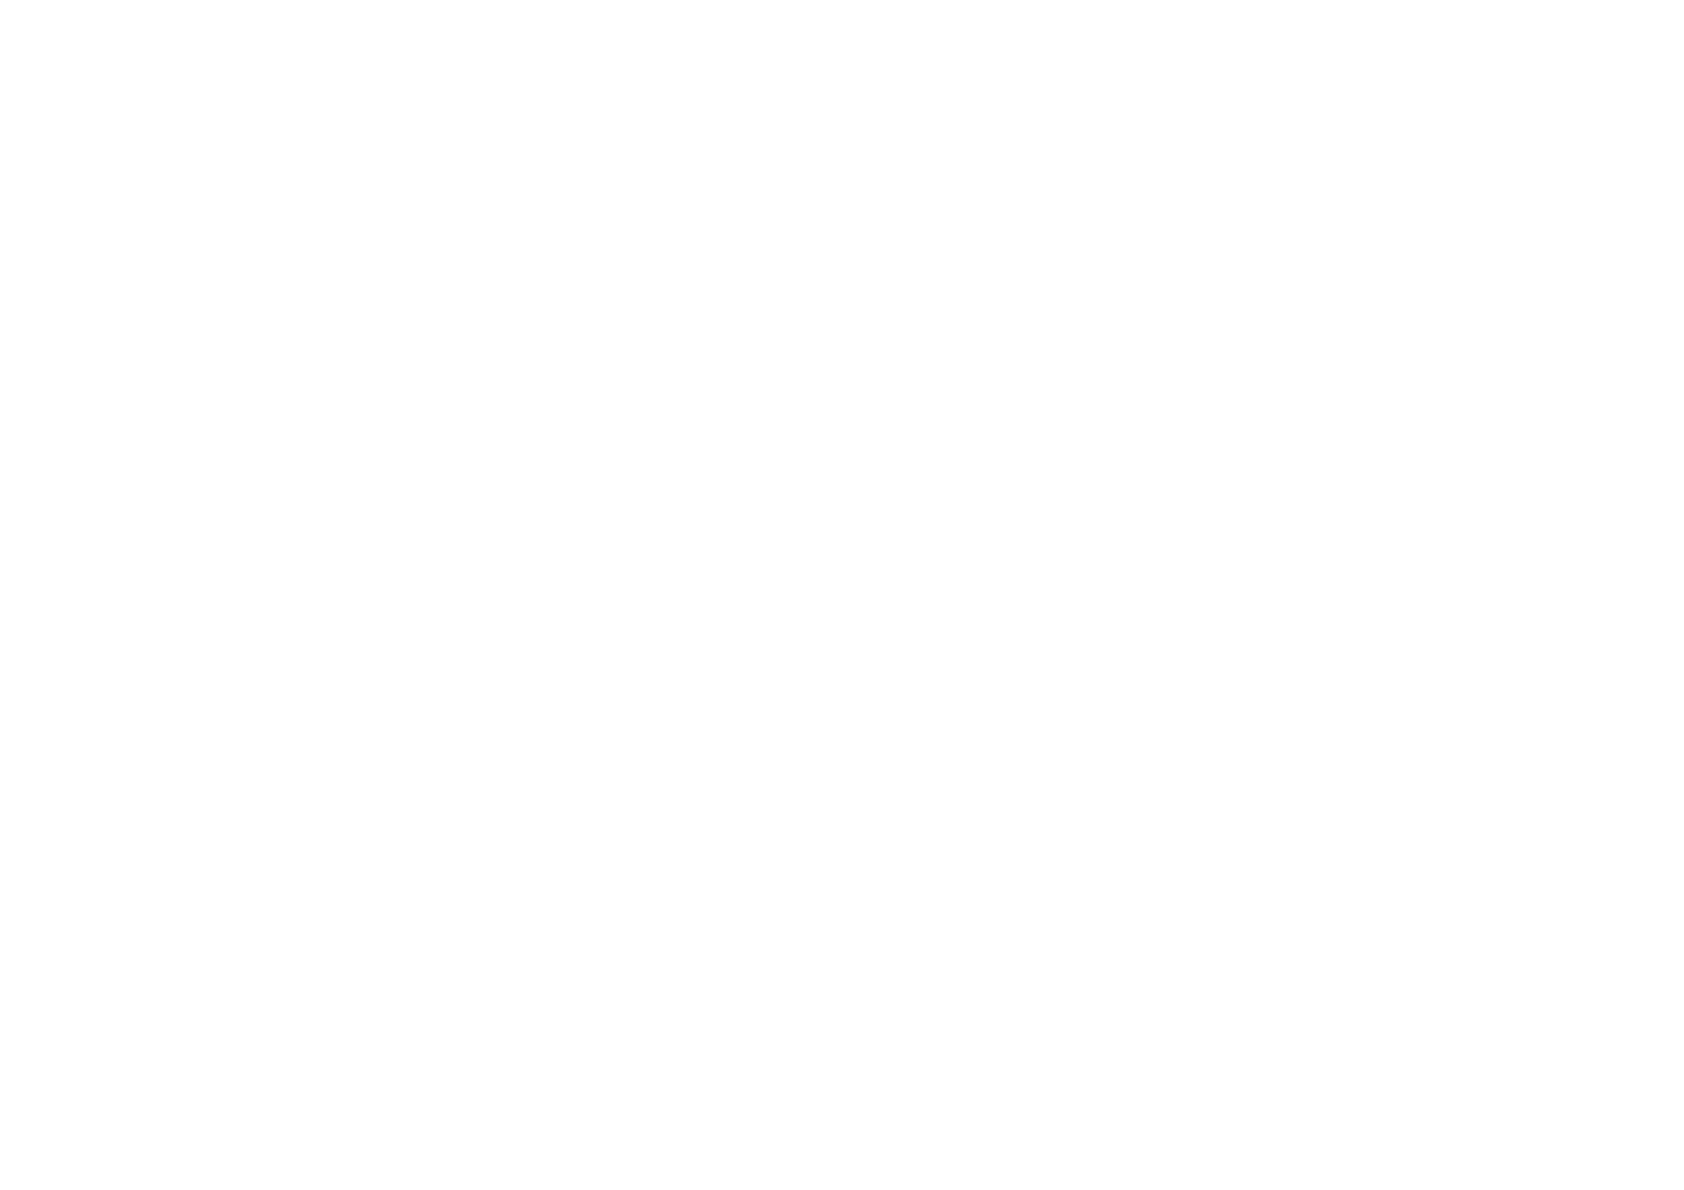 Logo_BOVER-BL_Negro-ai